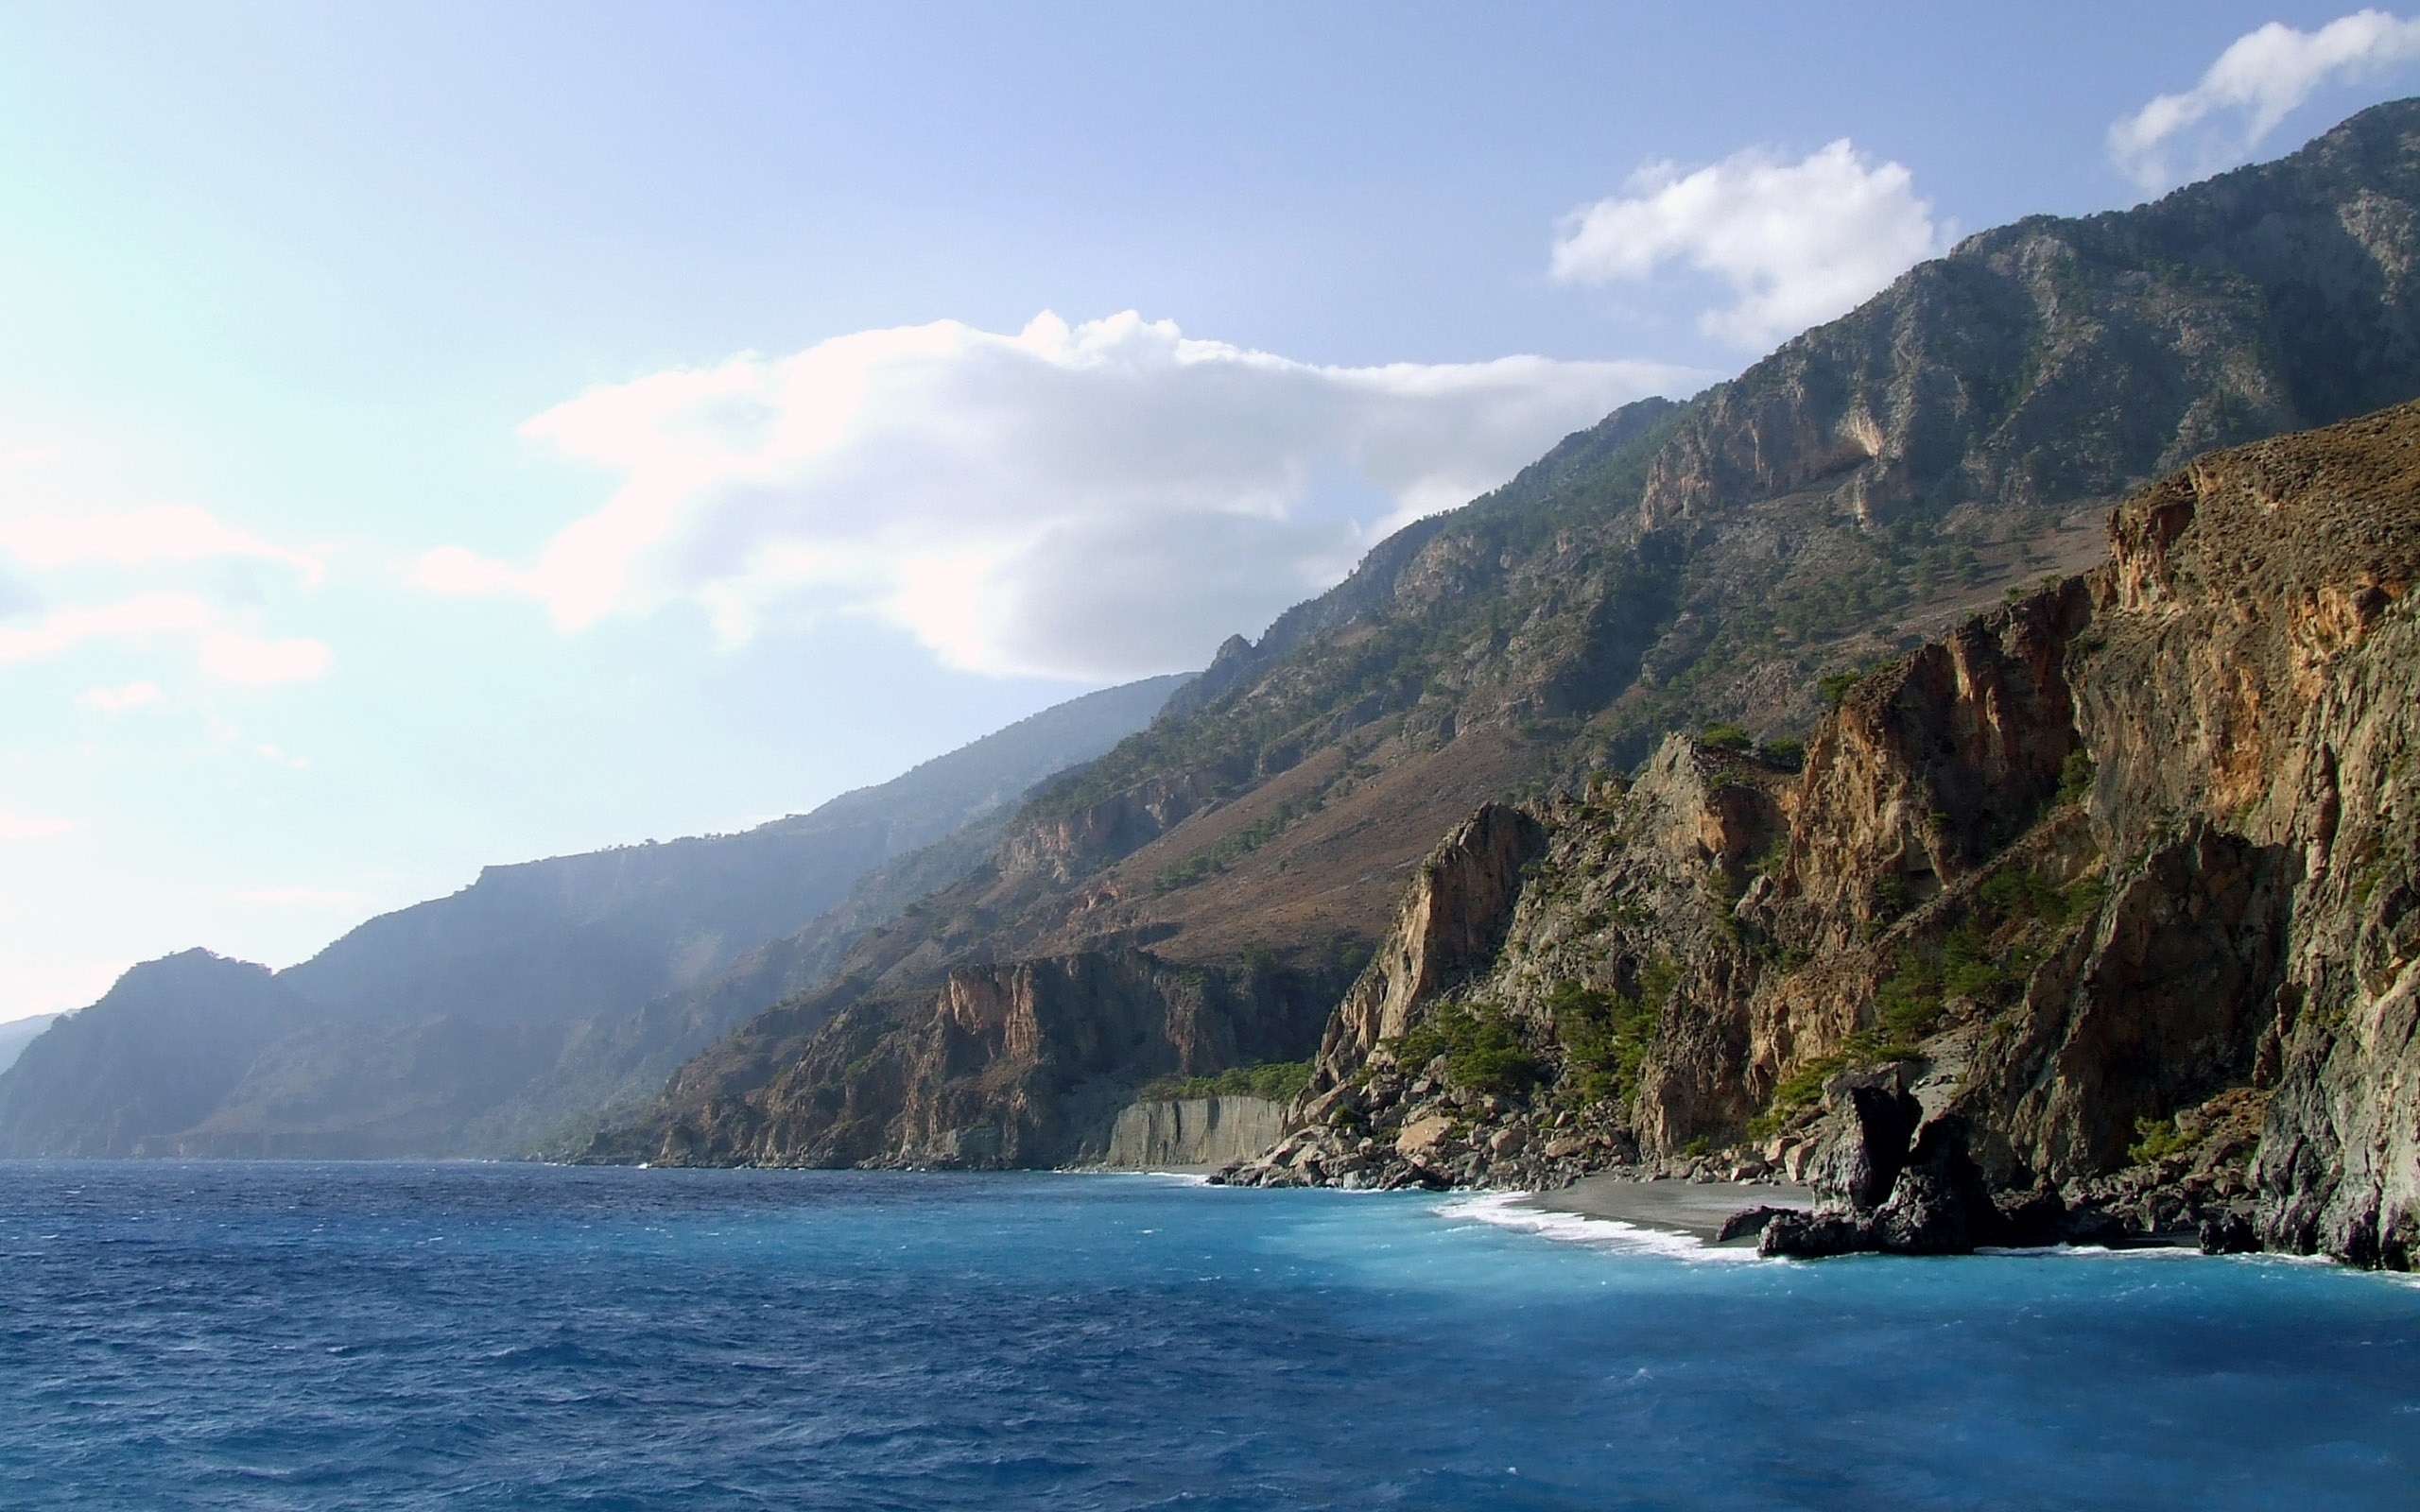 Crete Cliffs for 2560 x 1600 widescreen resolution